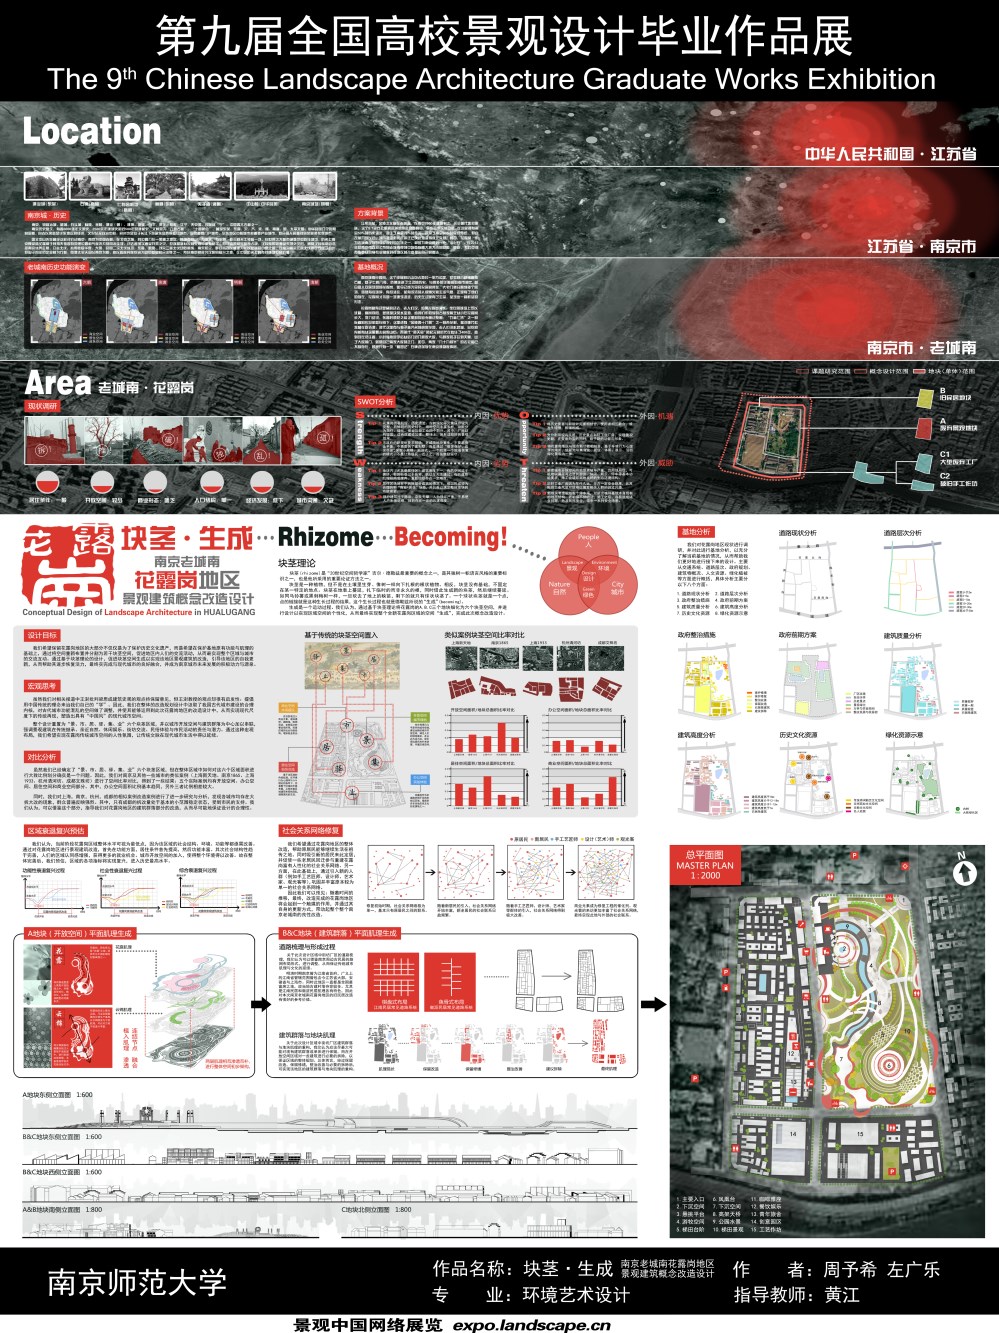 块茎·生成——南京老城南花露岗地区景观建筑概念改造设计-1